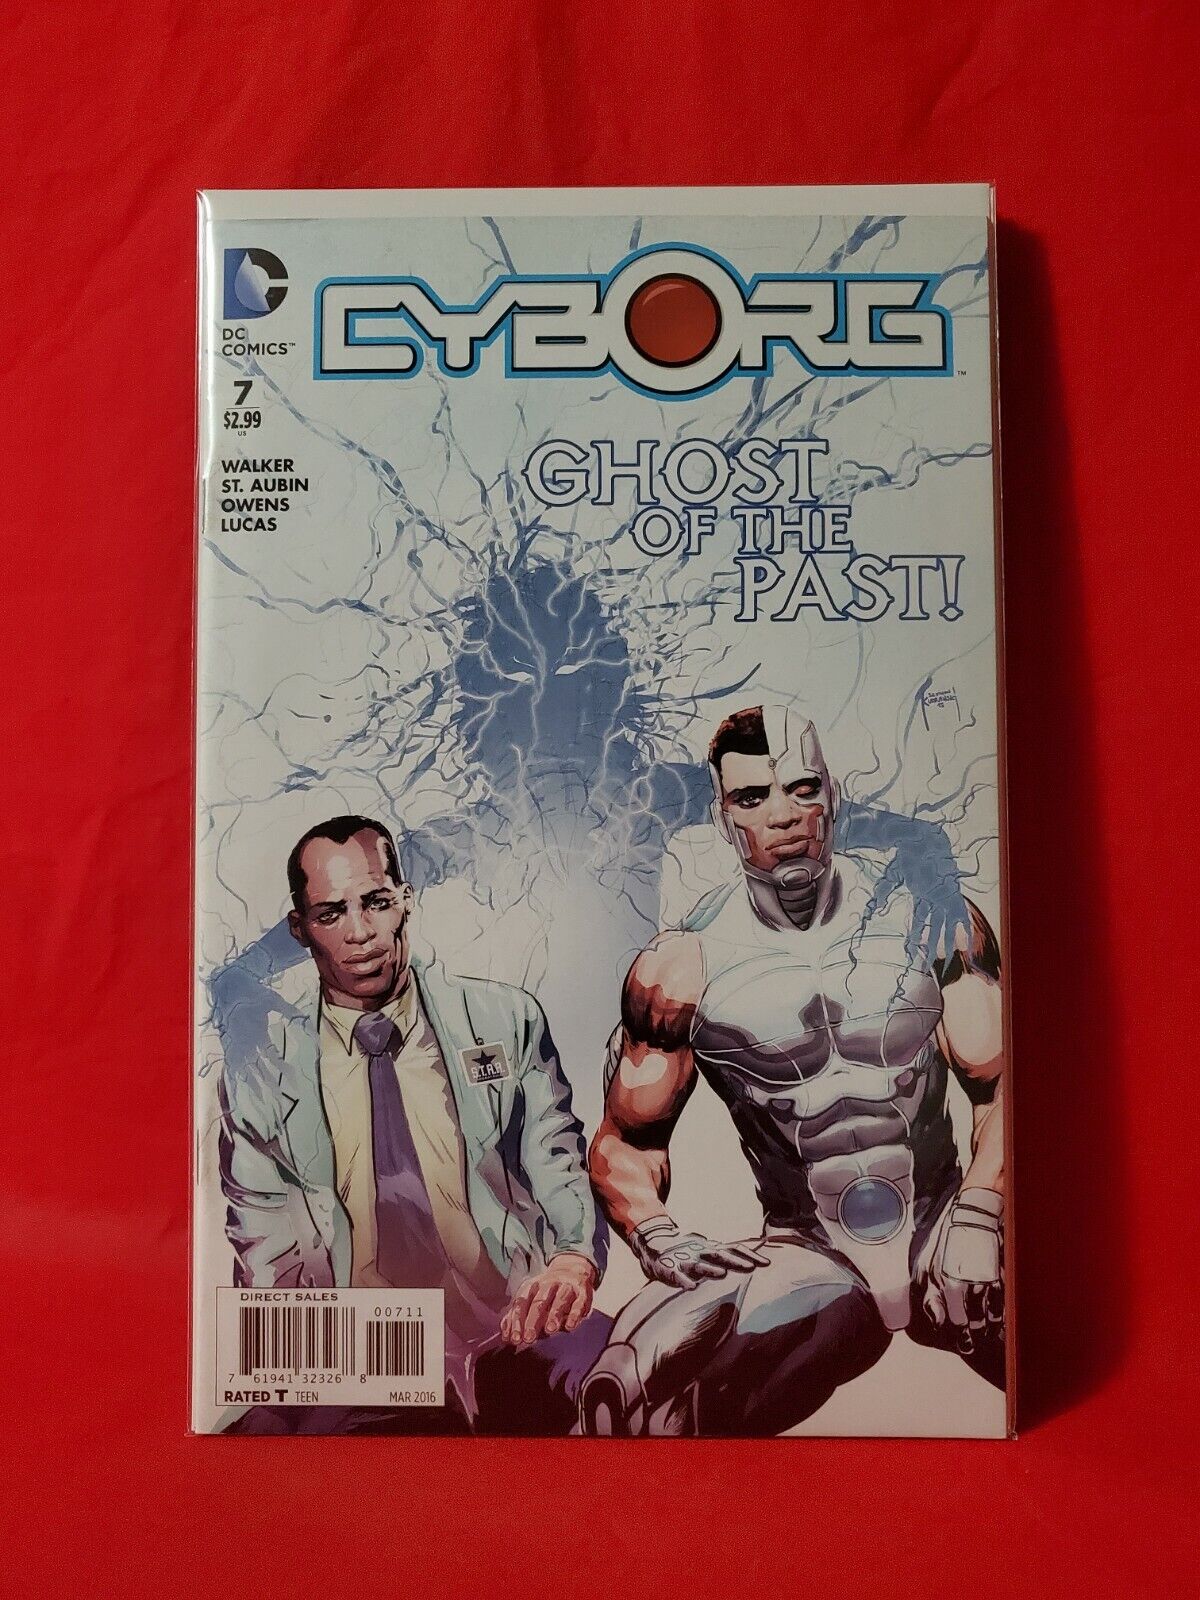 Cyborg 7 March 2016 DC Comics